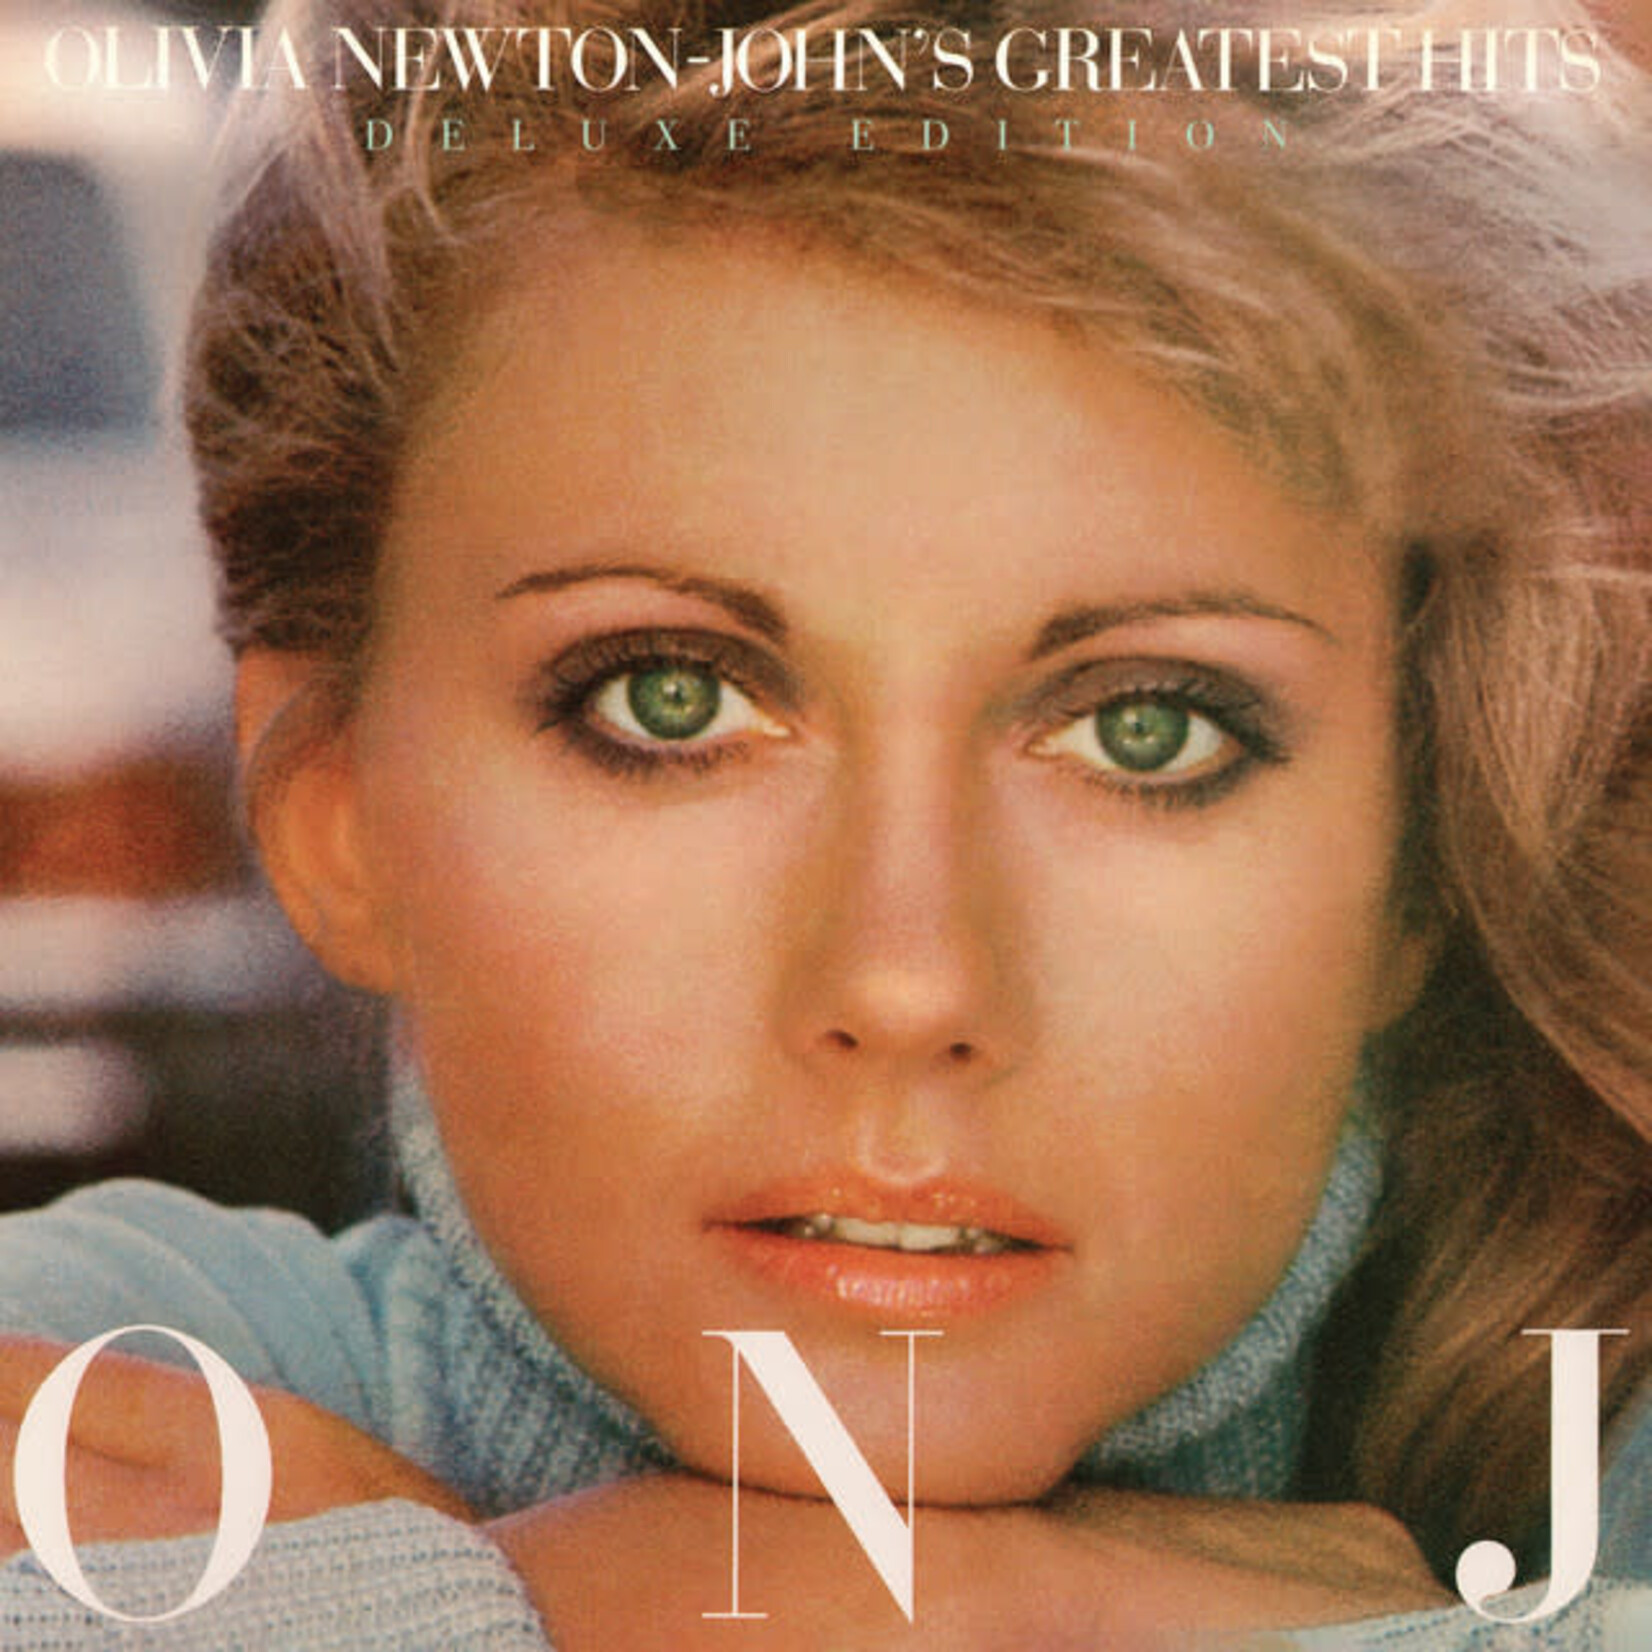 Olivia Newton-John - Olivia Newton-John's Greatest Hits (Dlx Ed) [CD]